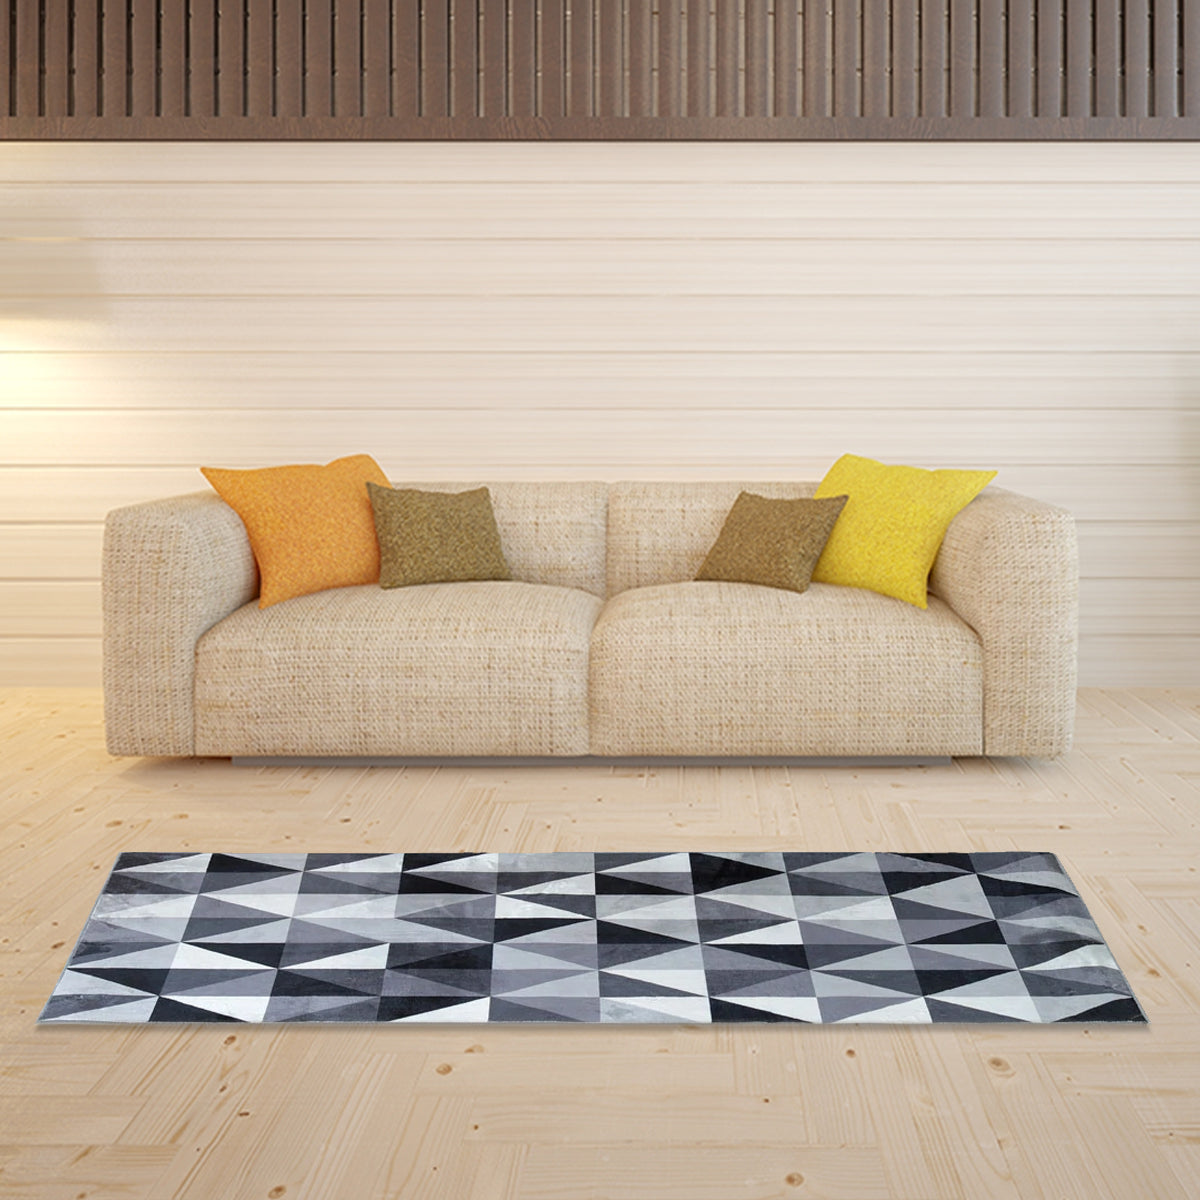 101+ Sophisticated Living Room Modern Cool Carpet & Rug with Music and More  Ideas — Freshouz Home & Architecture Decor | Wohnzimmerteppich, Wohnzimmer  modern, Wohnzimmer böden